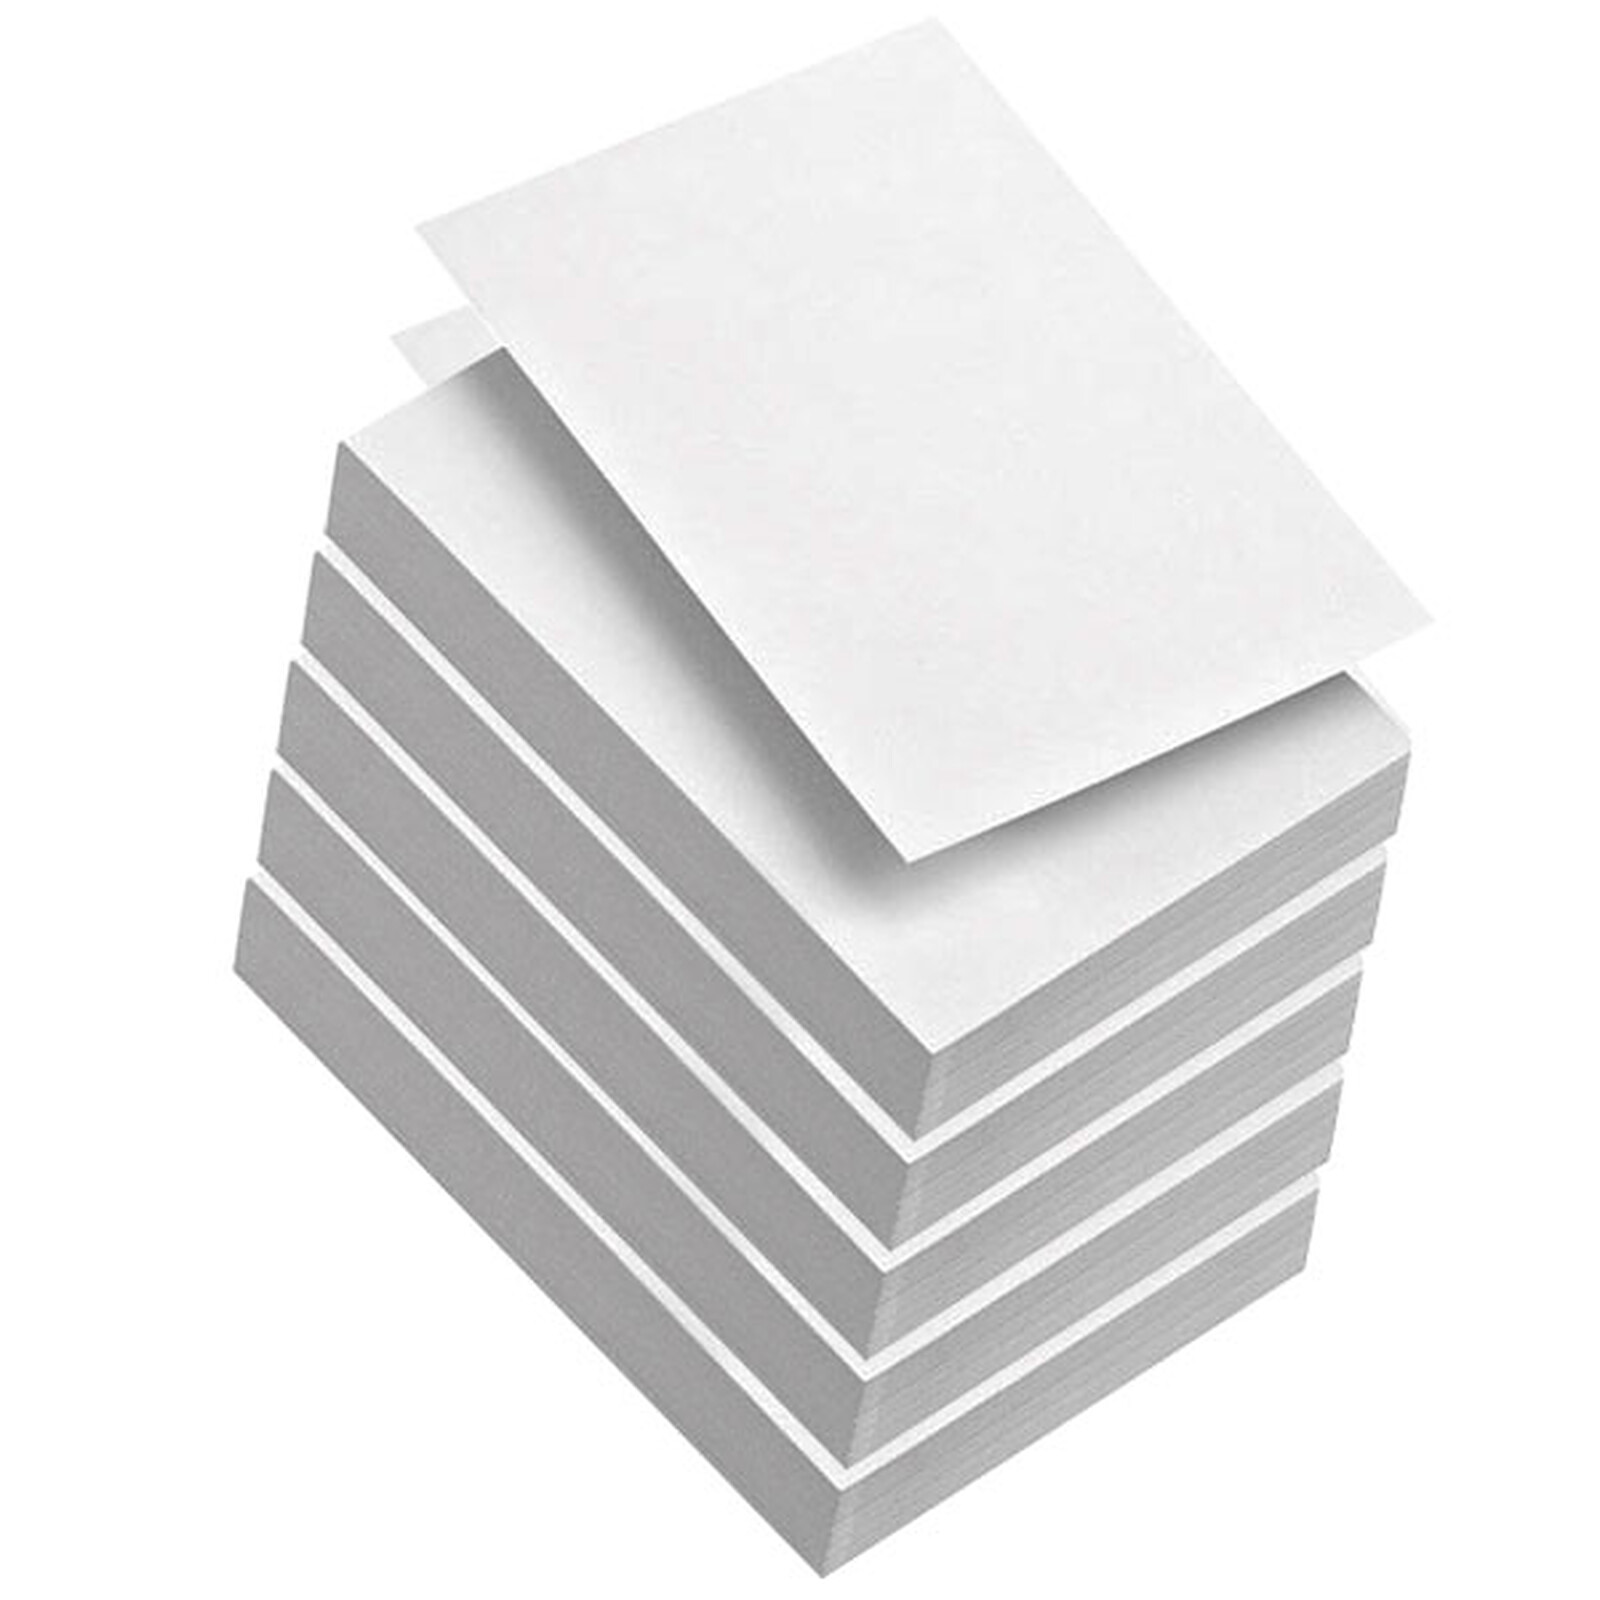 INAPA Ramette 500 feuilles papier TEXT & GRAPHICS A3 80g CIE 170